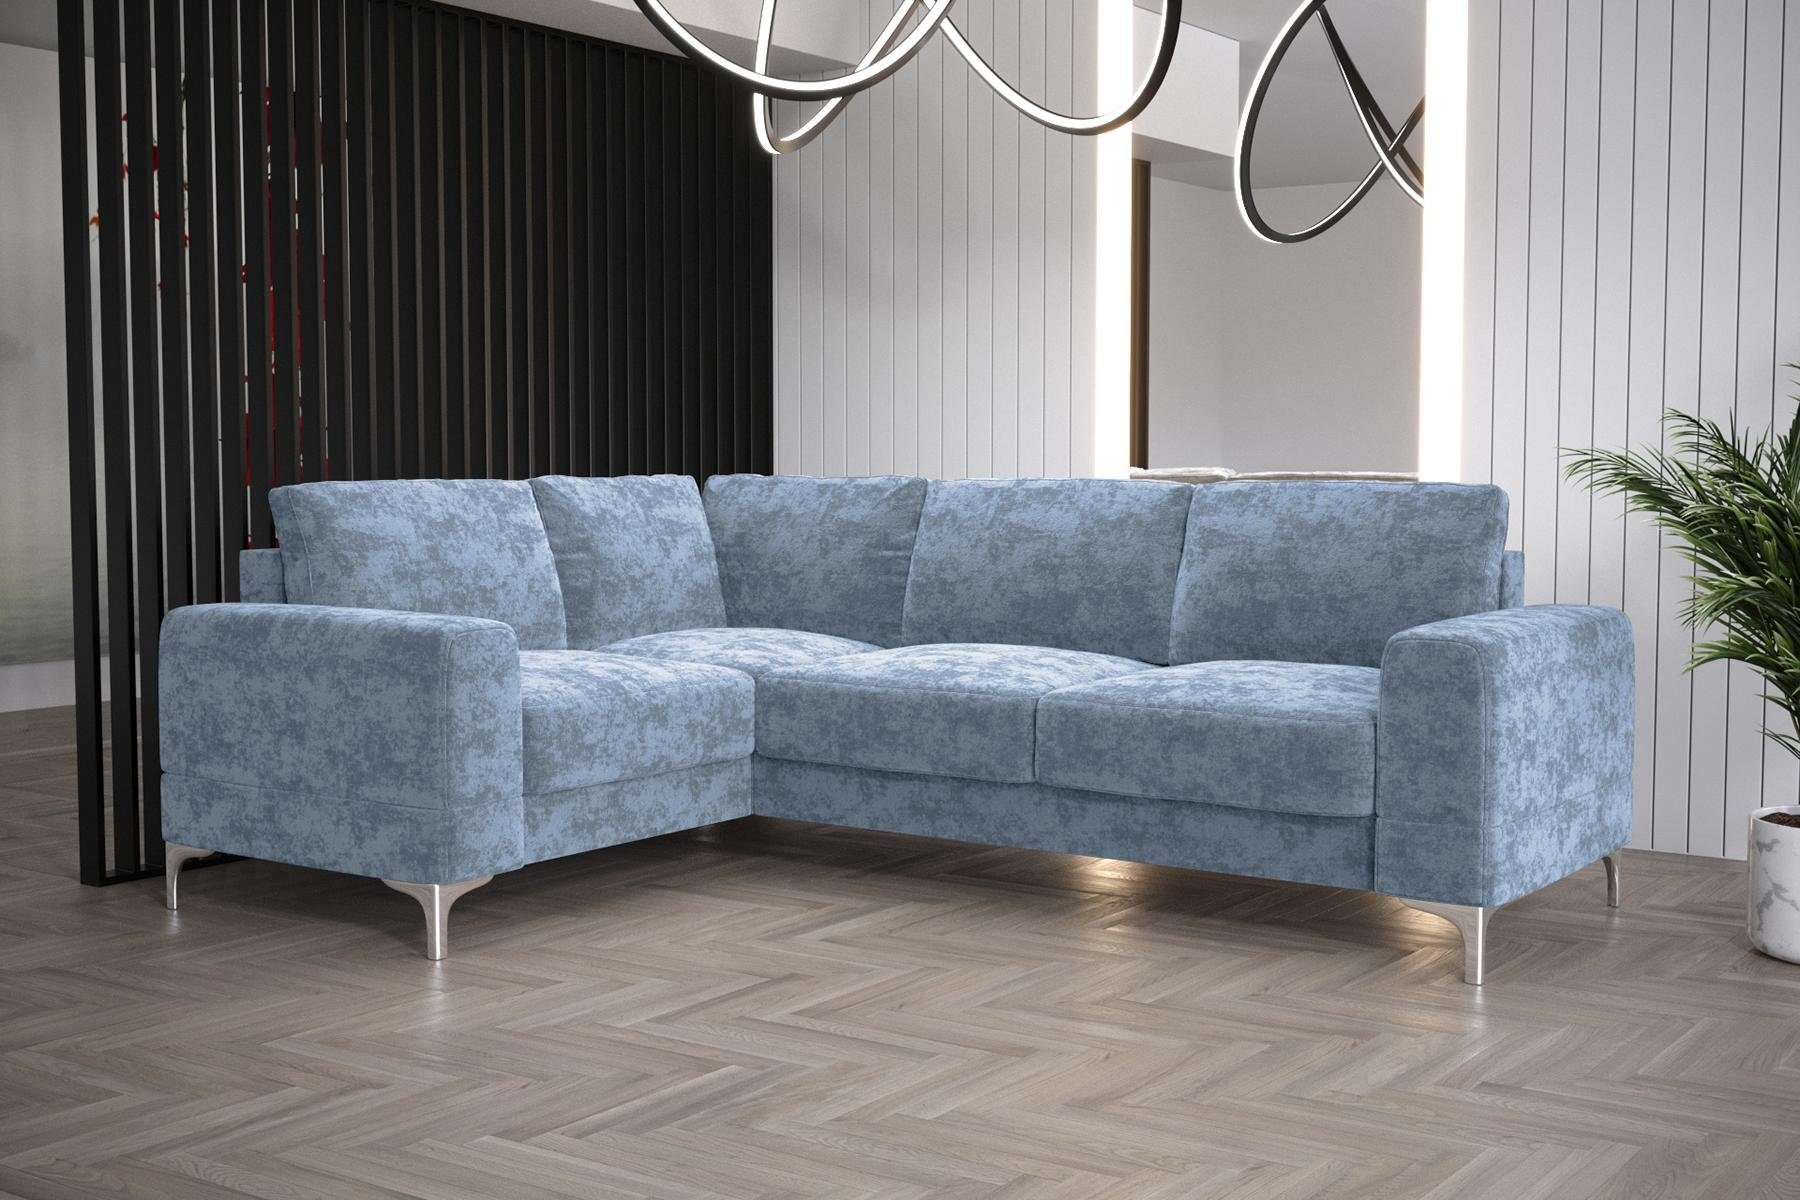 JVmoebel Ecksofa Wohnzimmer Sofa L-Form Möbel Modern Luxus Ecksofa Couch, Made in Europe Blau